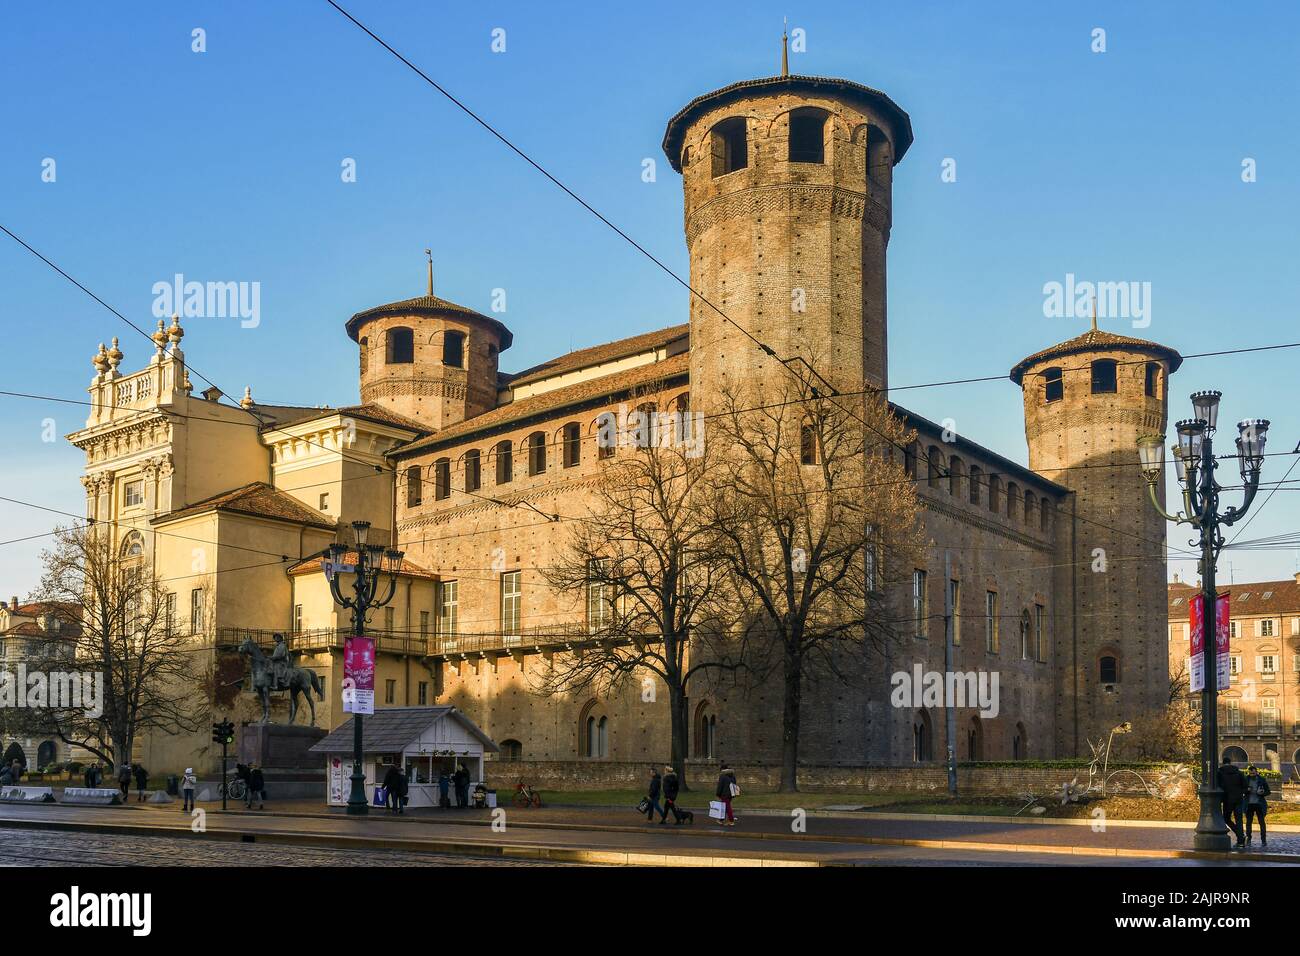 Vista di Palazzo Madama e casaforte degli Acaja edificio storico in Piazza Castello nel centro storico di Torino in una giornata di sole, Piemonte, Italia Foto Stock